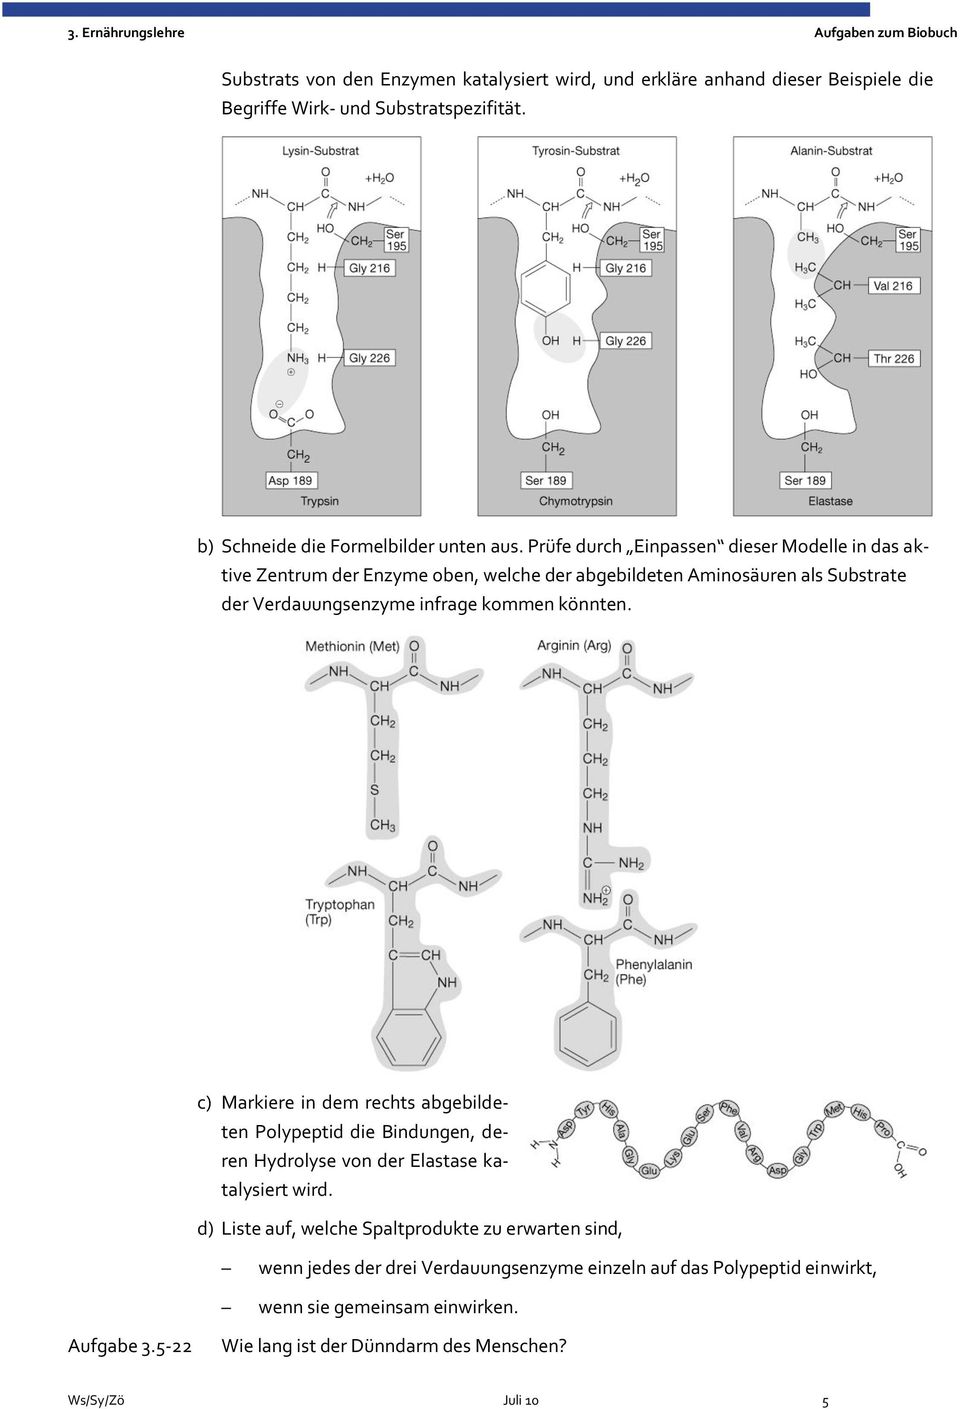 c) Markiere in dem rechts abgebildeten Polypeptid die Bindungen, deren Hydrolyse von der Elastase katalysiert wird.